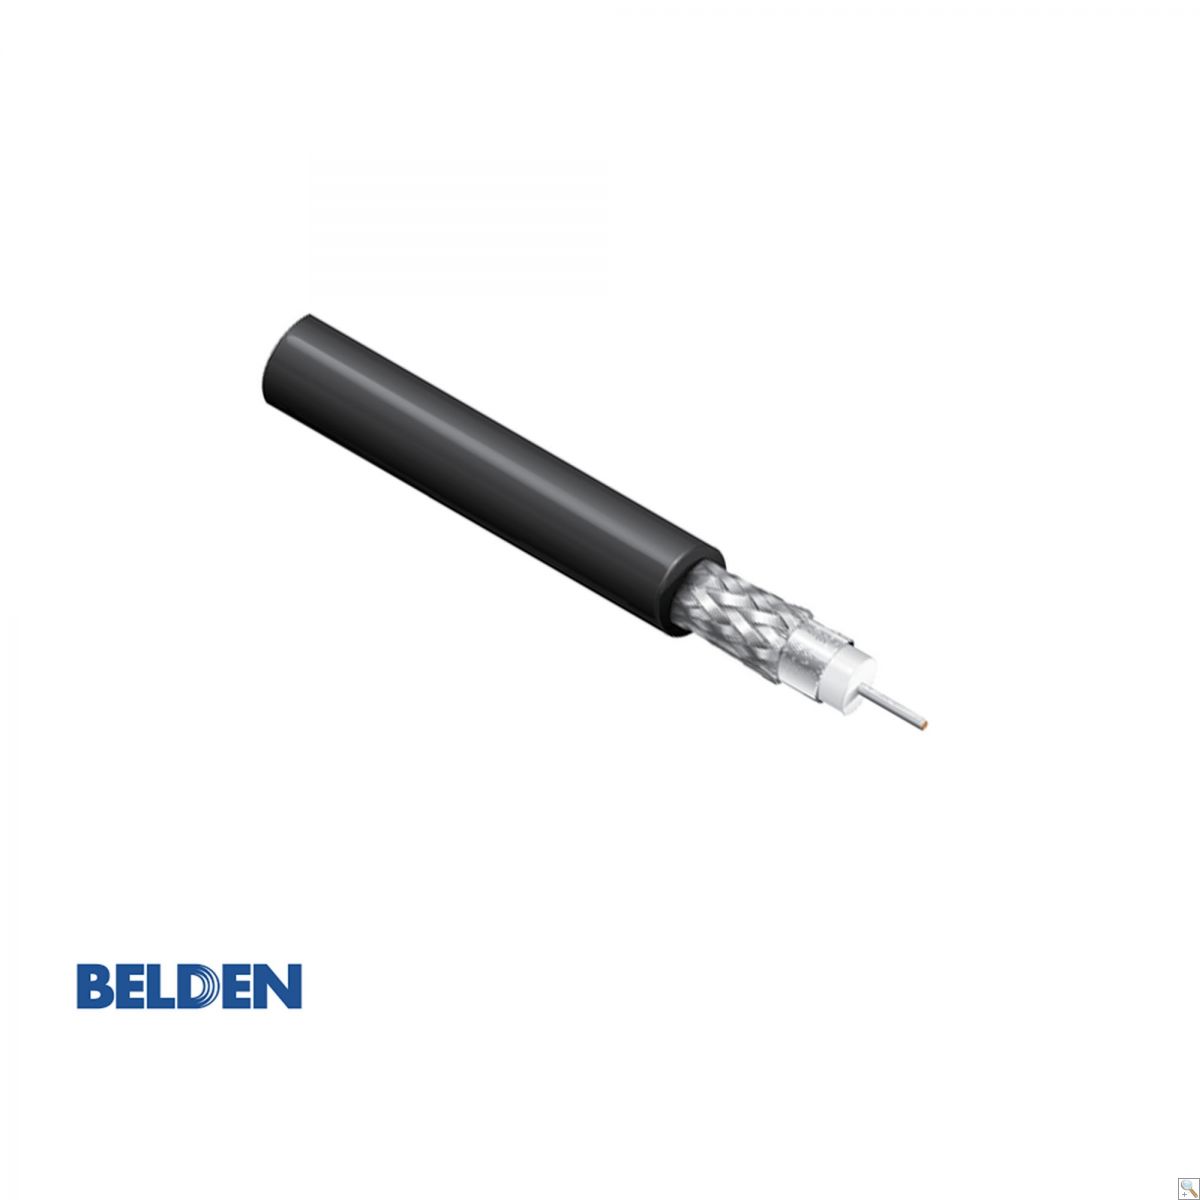 Belden 4505R - 305M